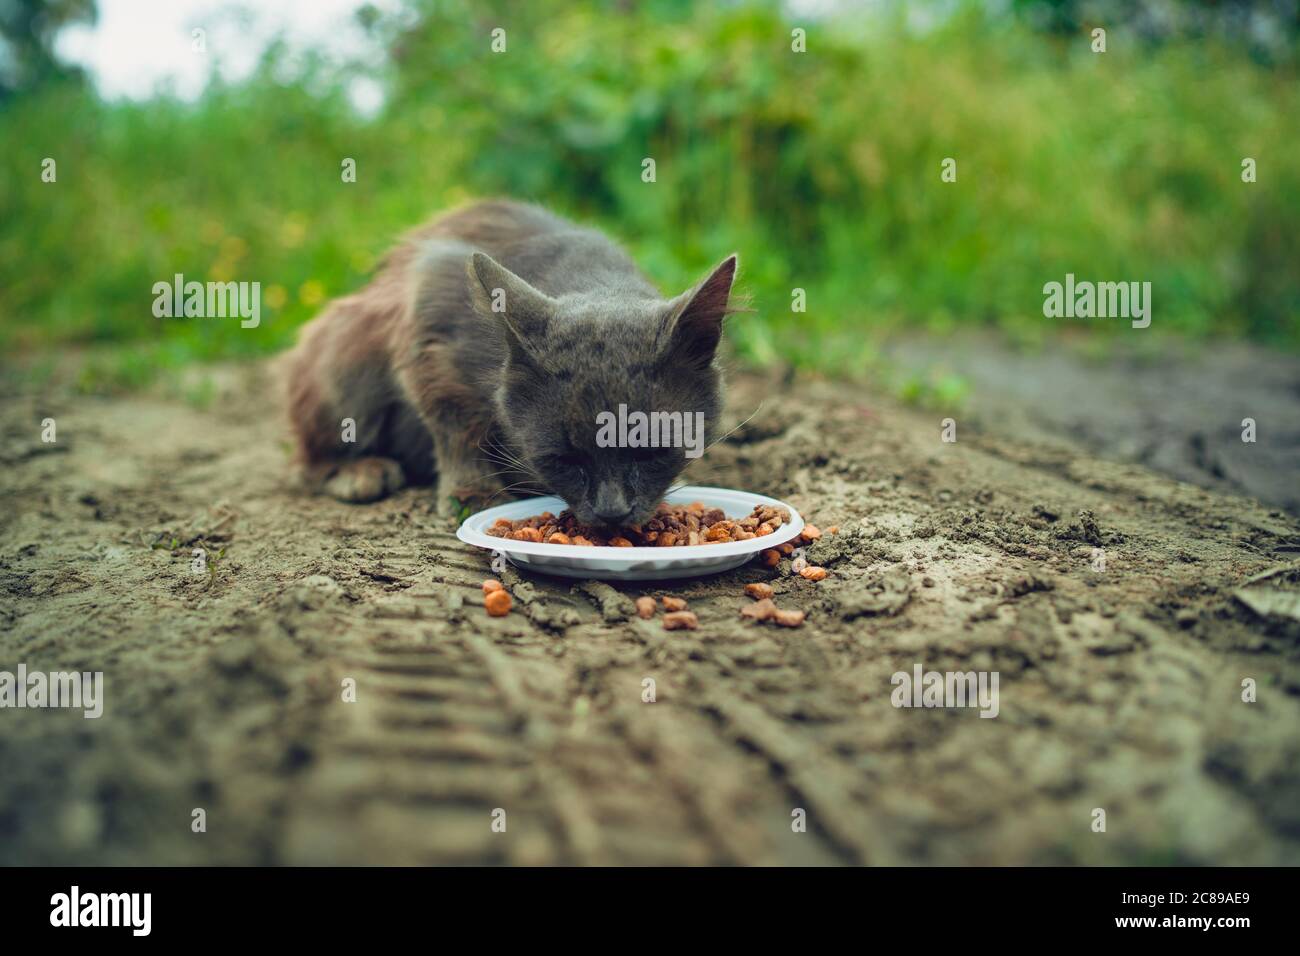 Il pussycat senza tetto mangia cibo secco dal piatto sulla strada. Primo piano di gatto randagio che mangia cibo utile per animali domestici. Concetto di cura degli animali. Foto Stock